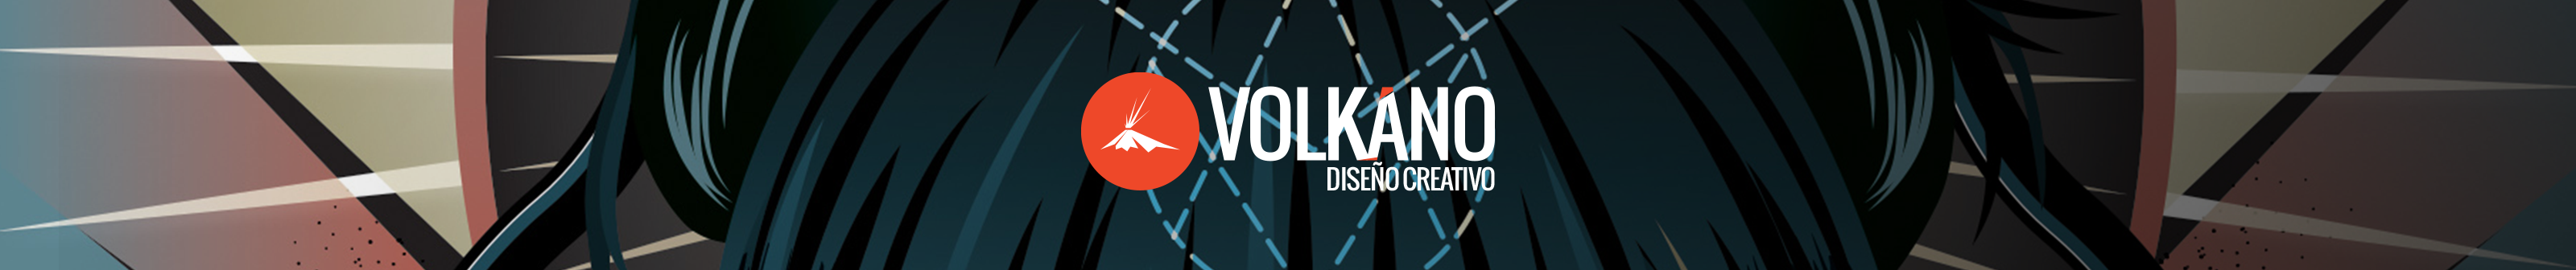 Volkano Creative Design's profile banner